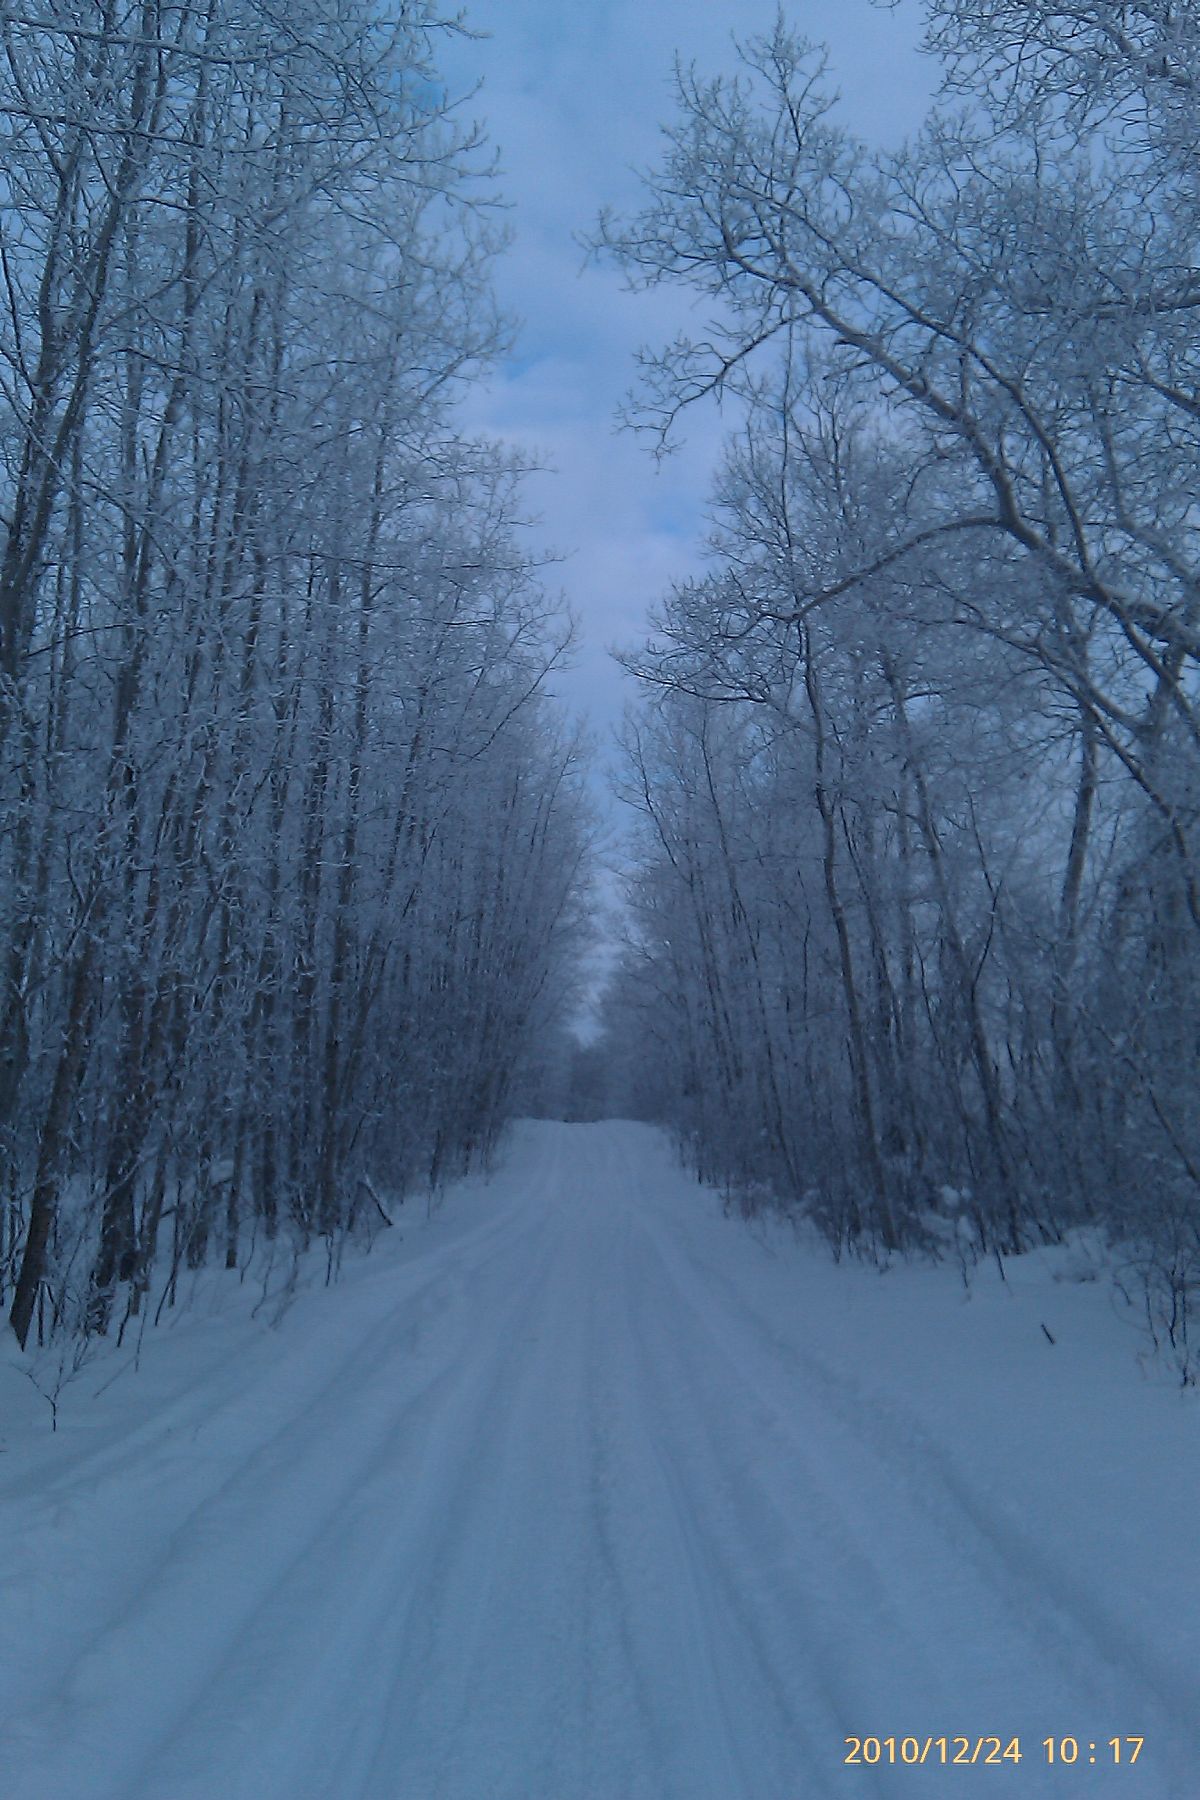 Winter Wonder land trail. 